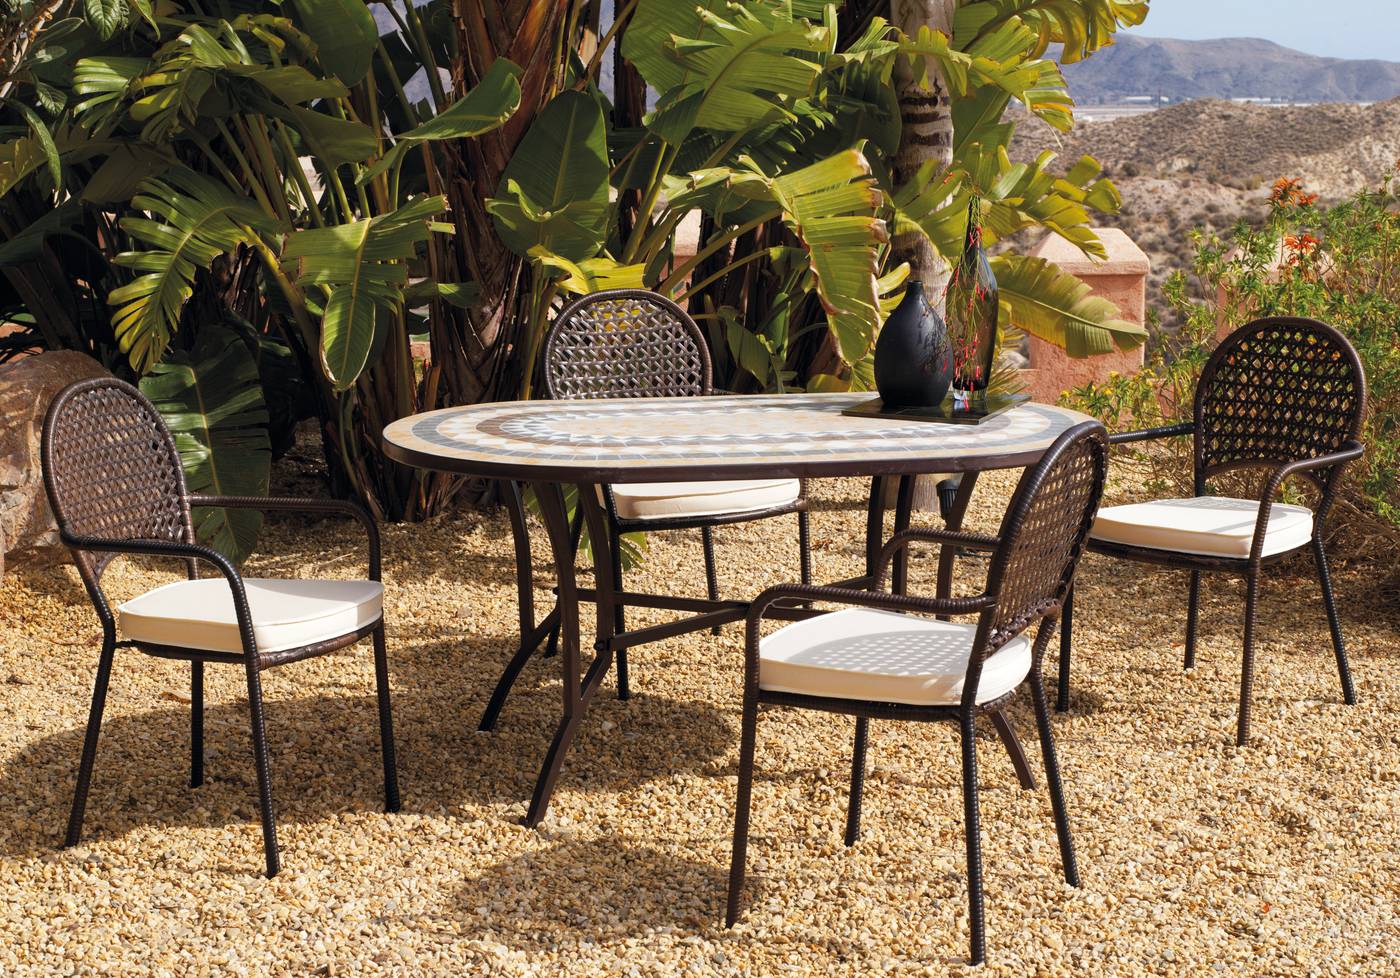 Mesa Mosaico Oasis-150 - Mesa de forja para jardín y terraza, con patas reforzadas y panel de mosaico ovalado de 150 cm.